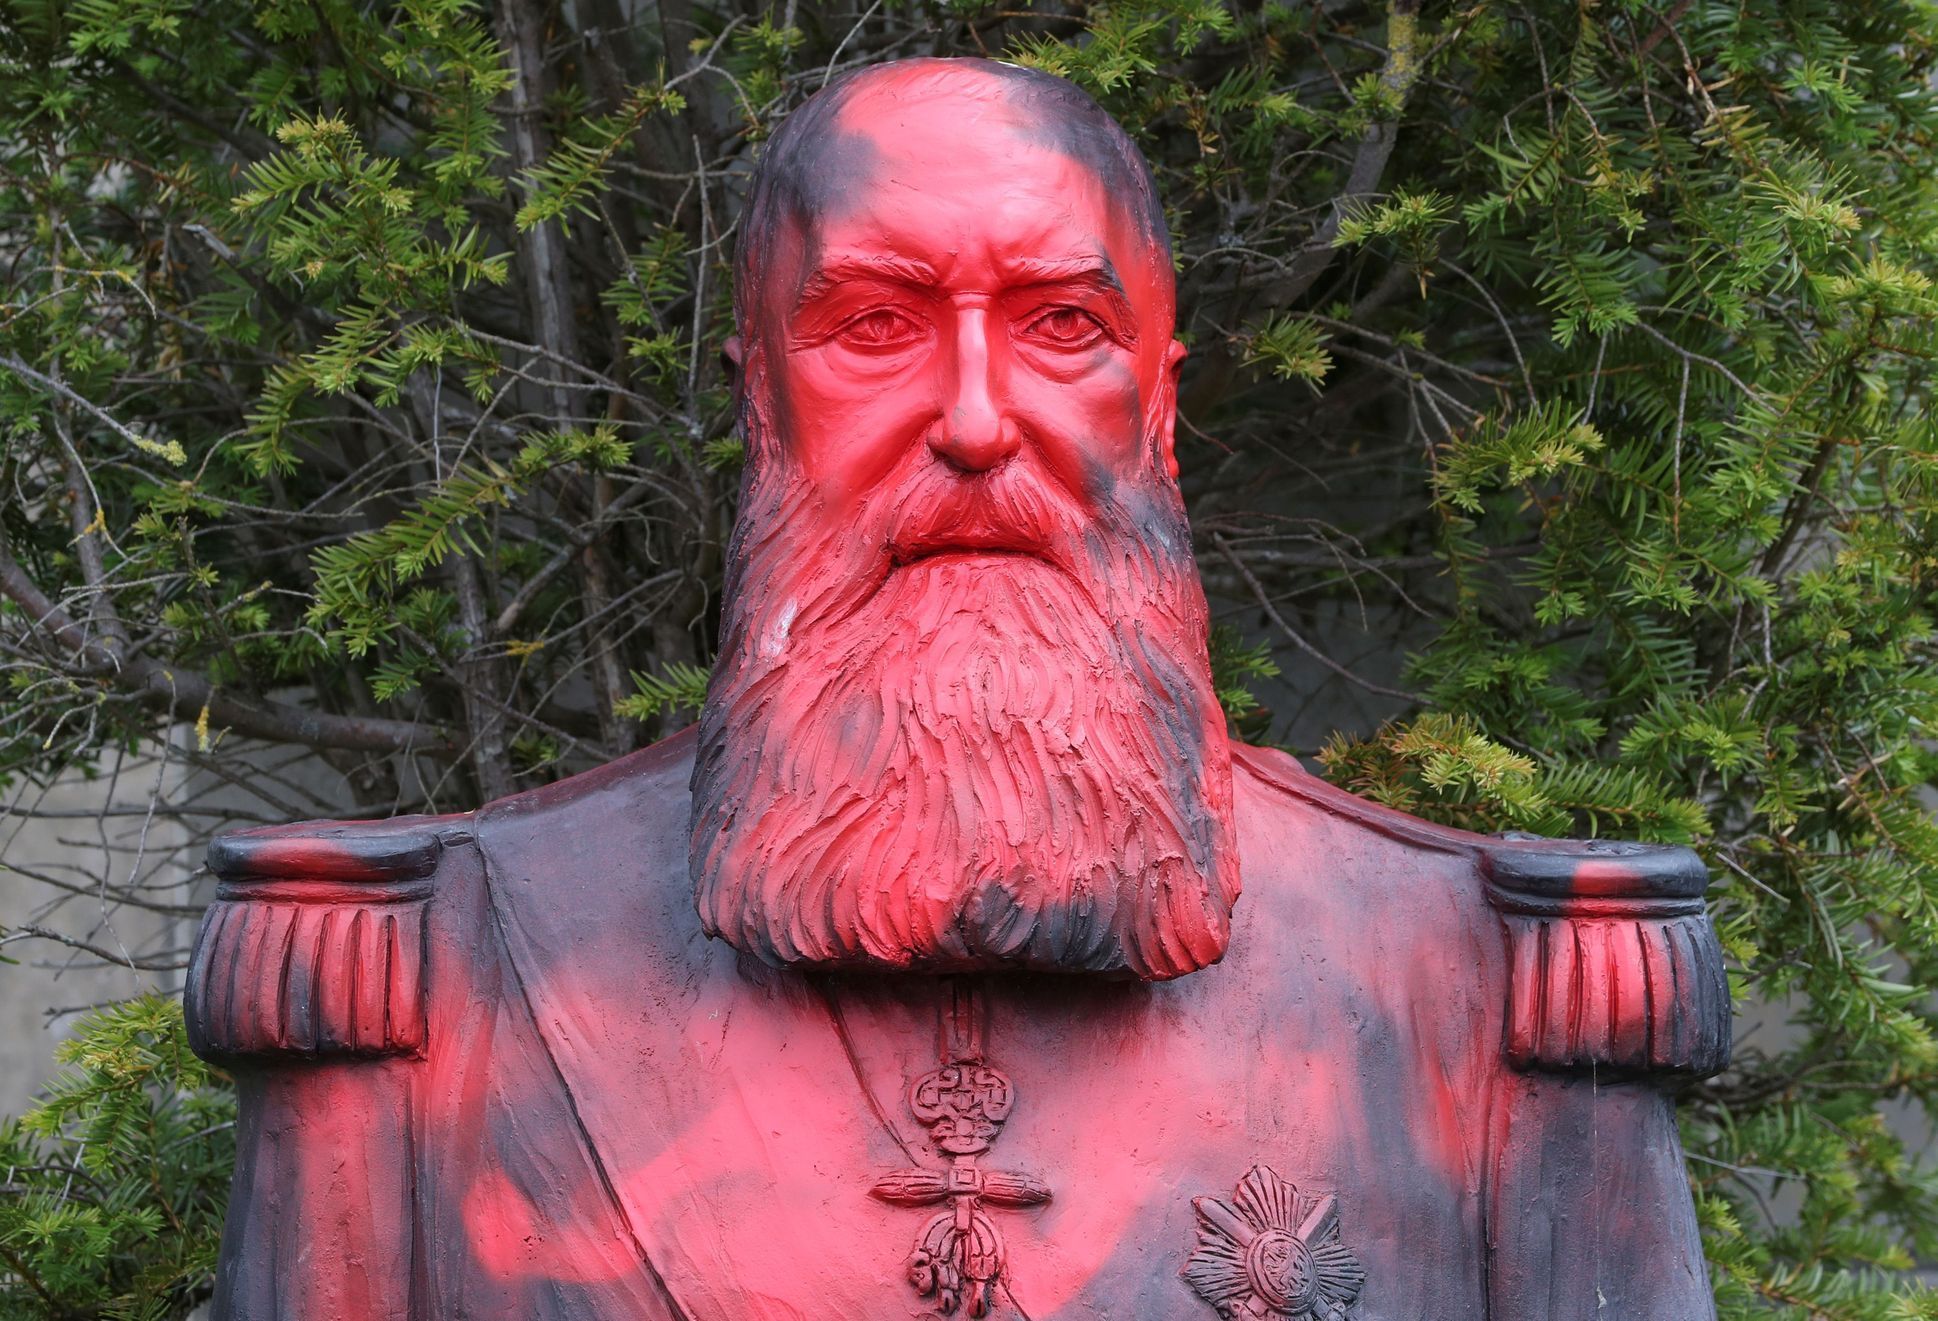 Posprejovaná busta krále Leopolda II. v belgickém městě Tervuren.